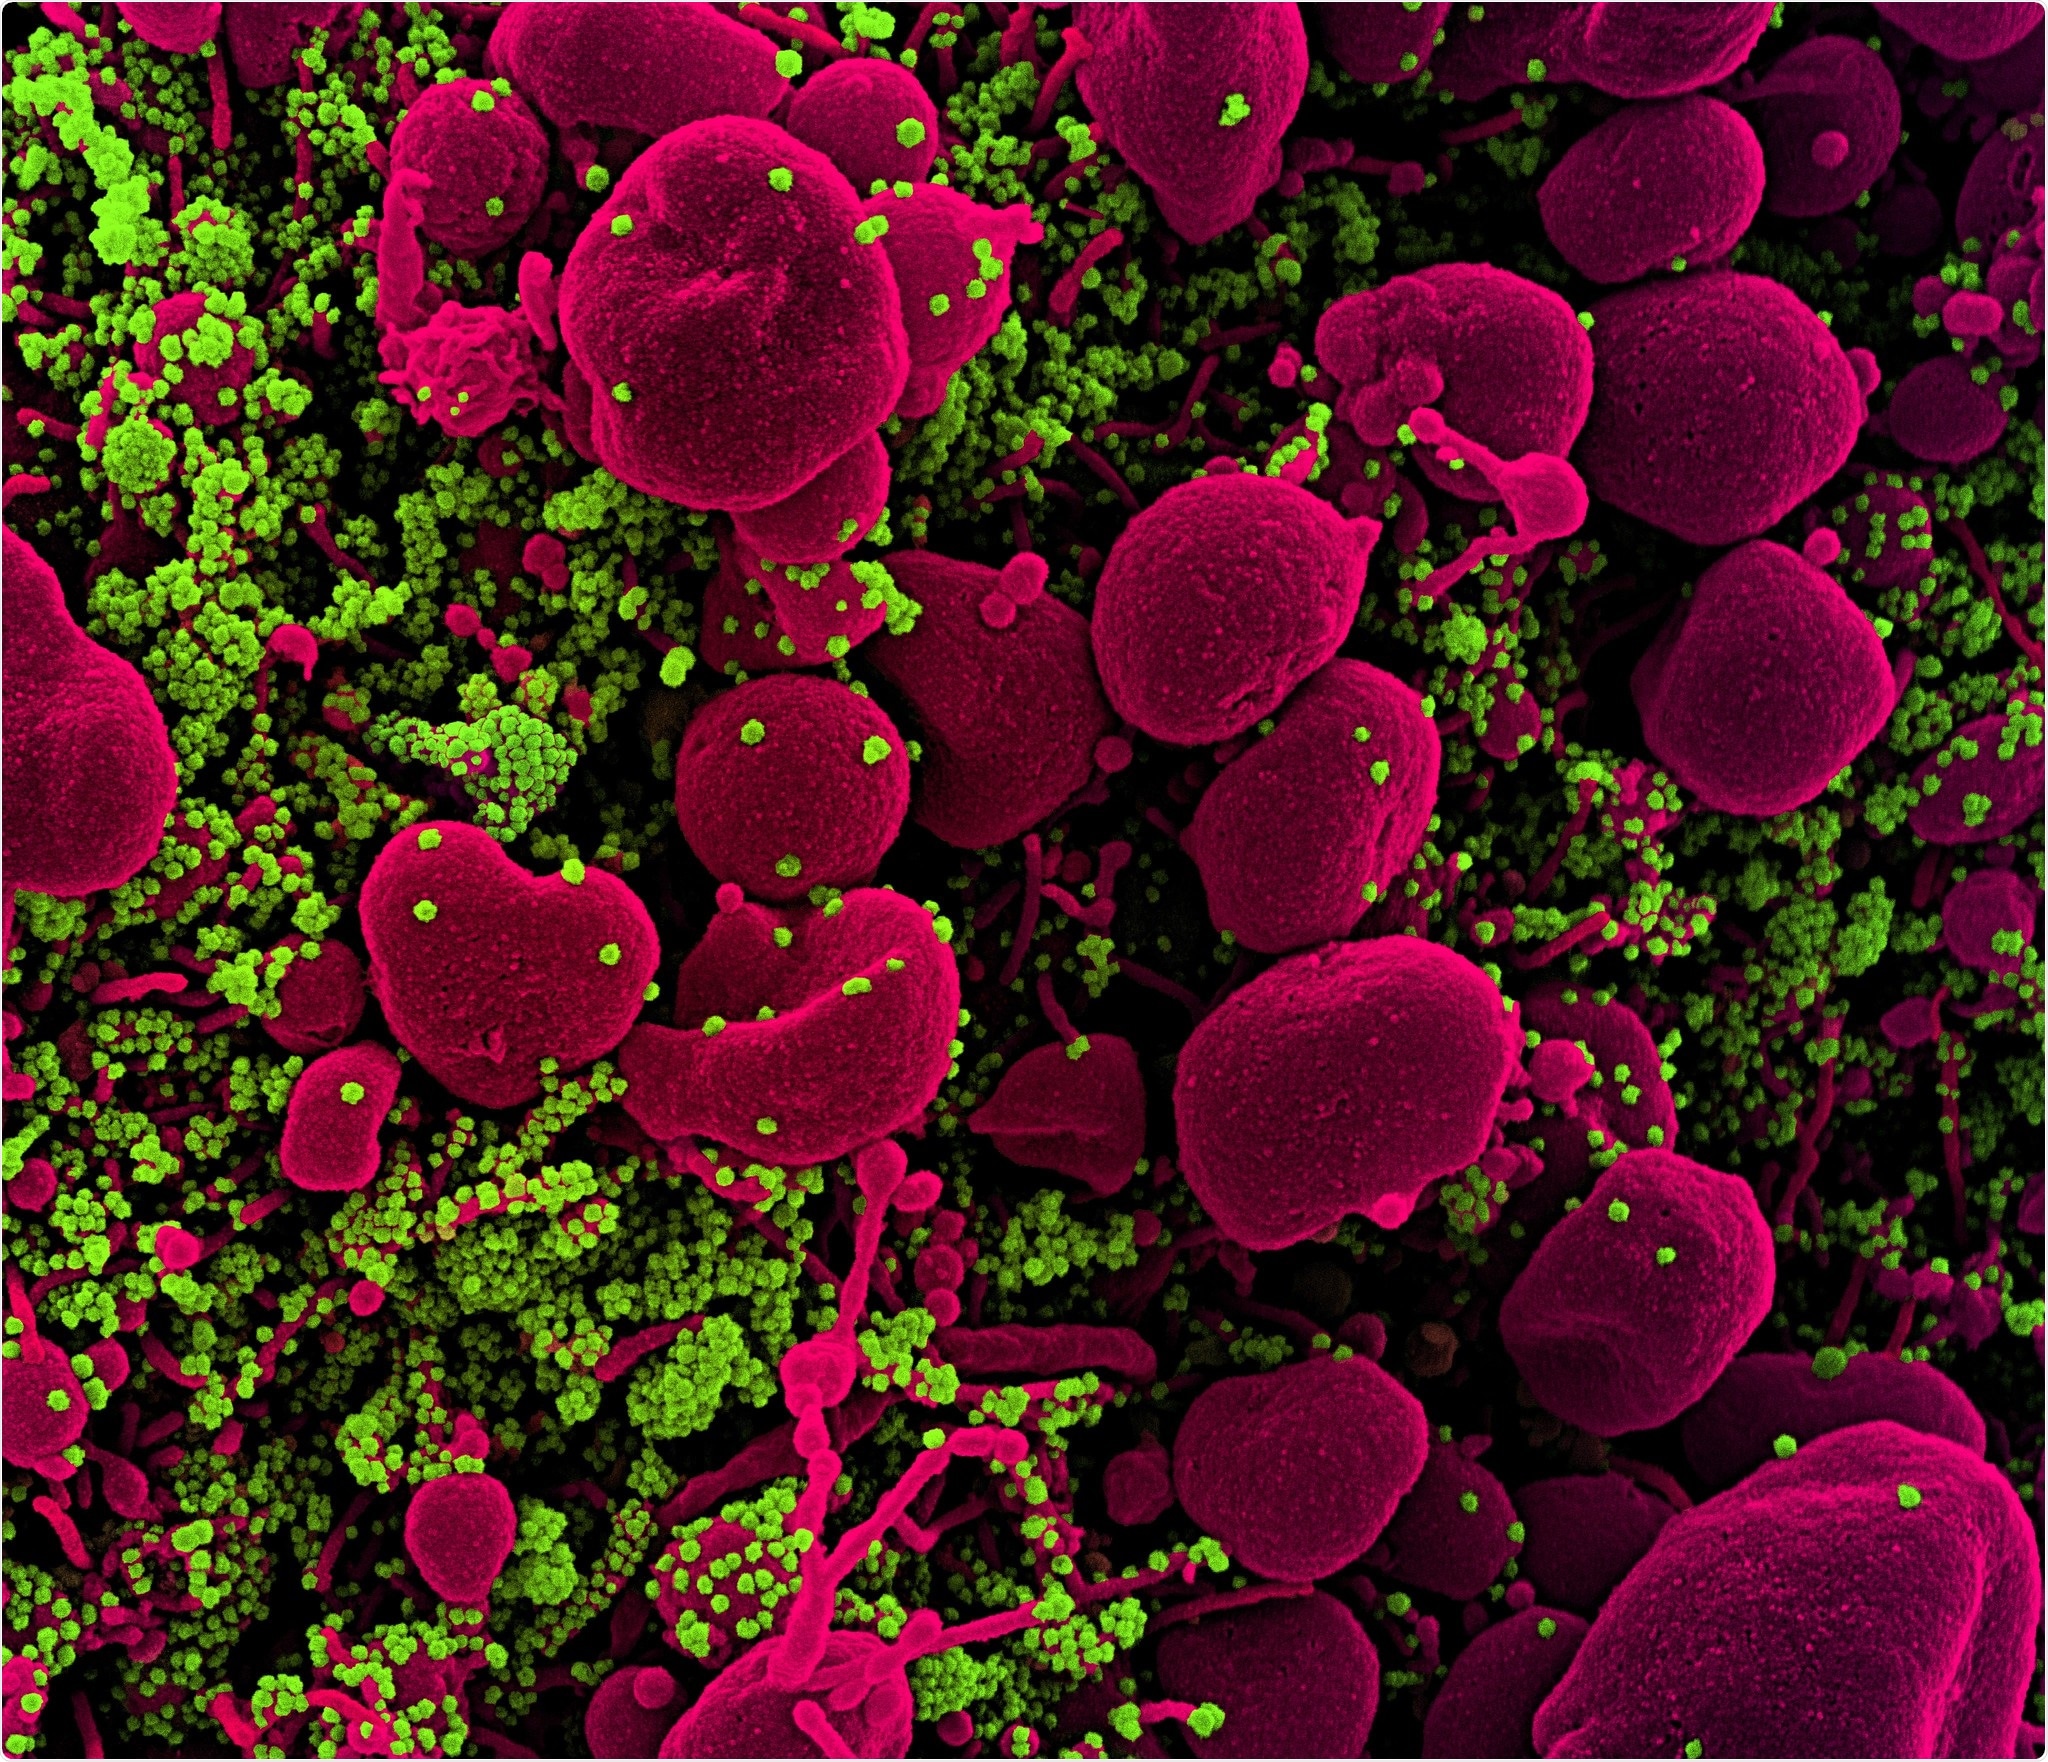 Micrografia de elétron nova da exploração de Coronavirus SARS-CoV-2 Colorized de uma pilha apoptotic (rosa) contaminada pesadamente com as partículas do vírus SARS-CoV-2 (verde), isoladas de uma amostra paciente. A imagem capturada no NIAID integrou a instalação de investigação no forte Detrick, Maryland. Crédito: NIAID